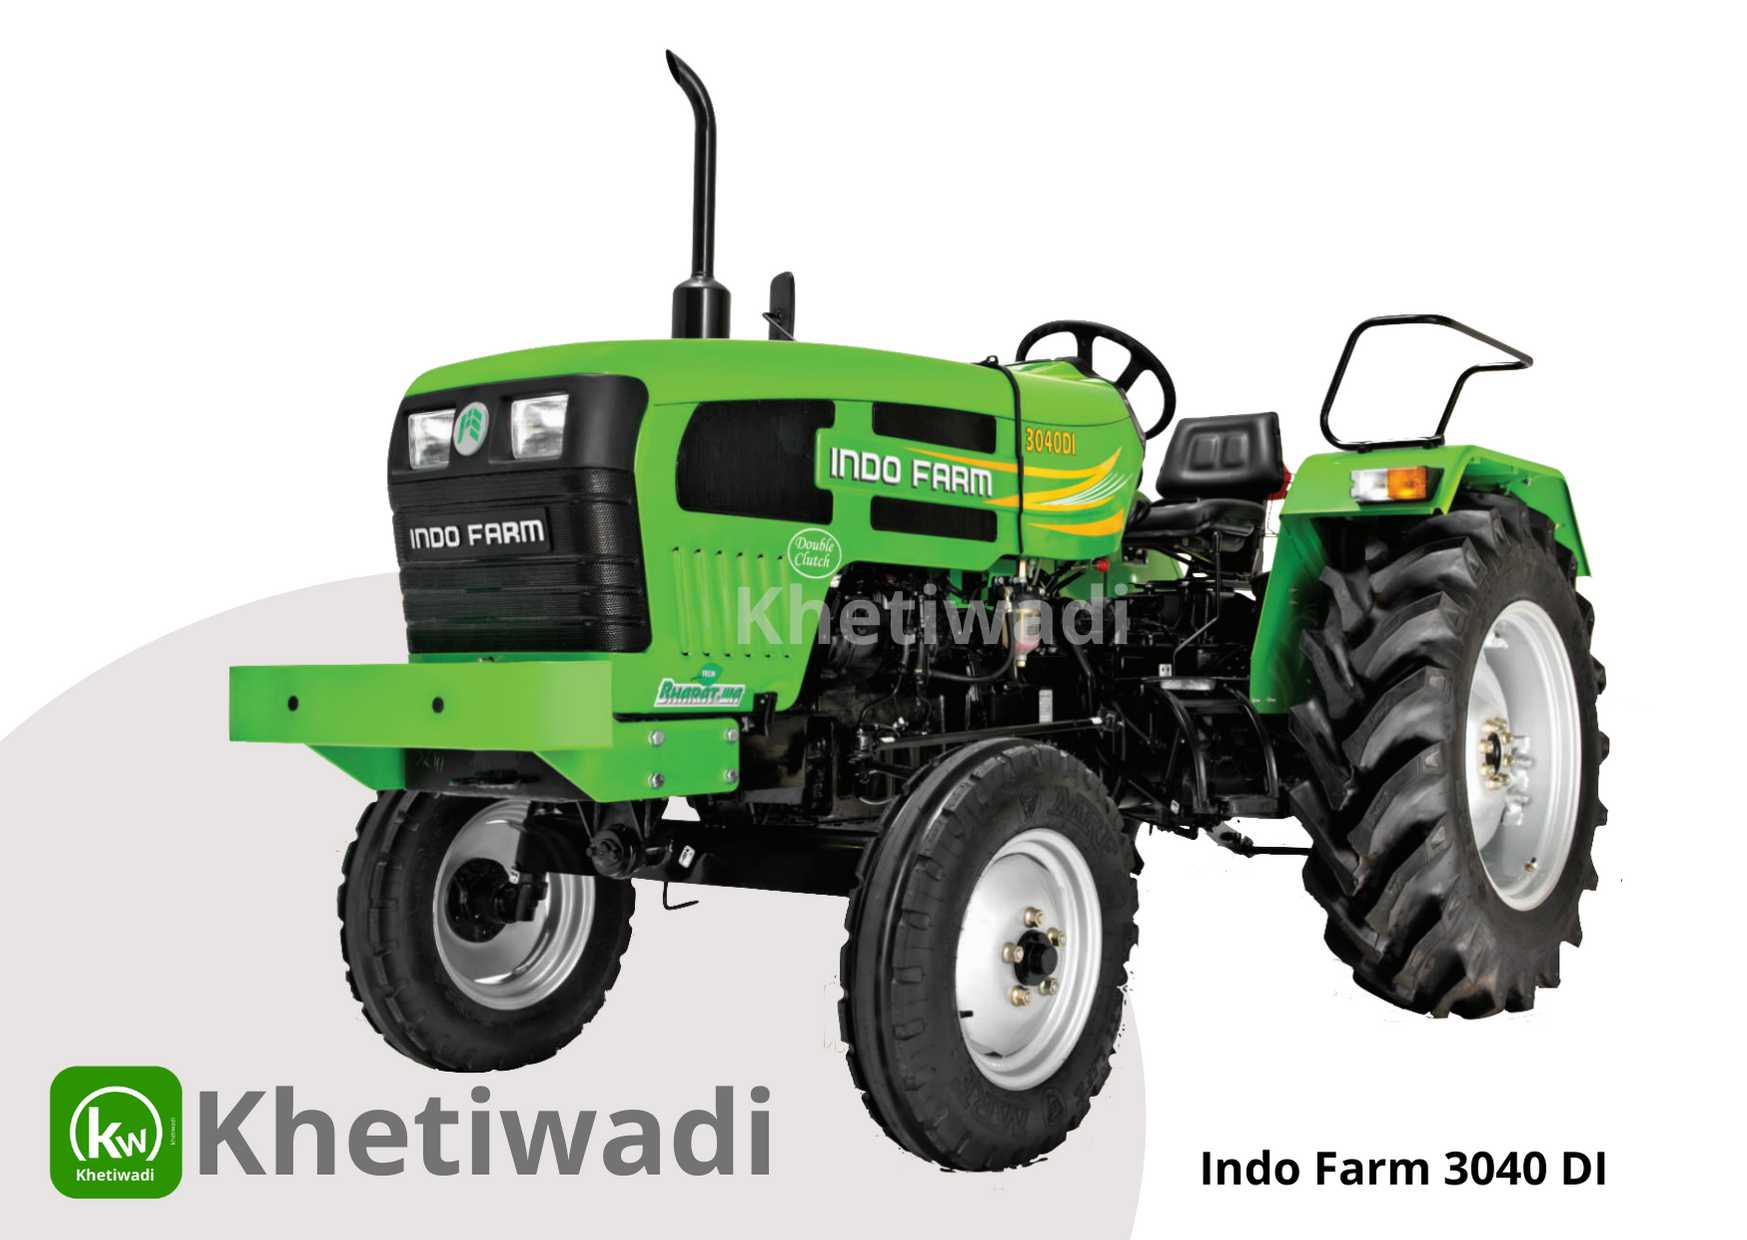 Indo Farm 3040 DI image